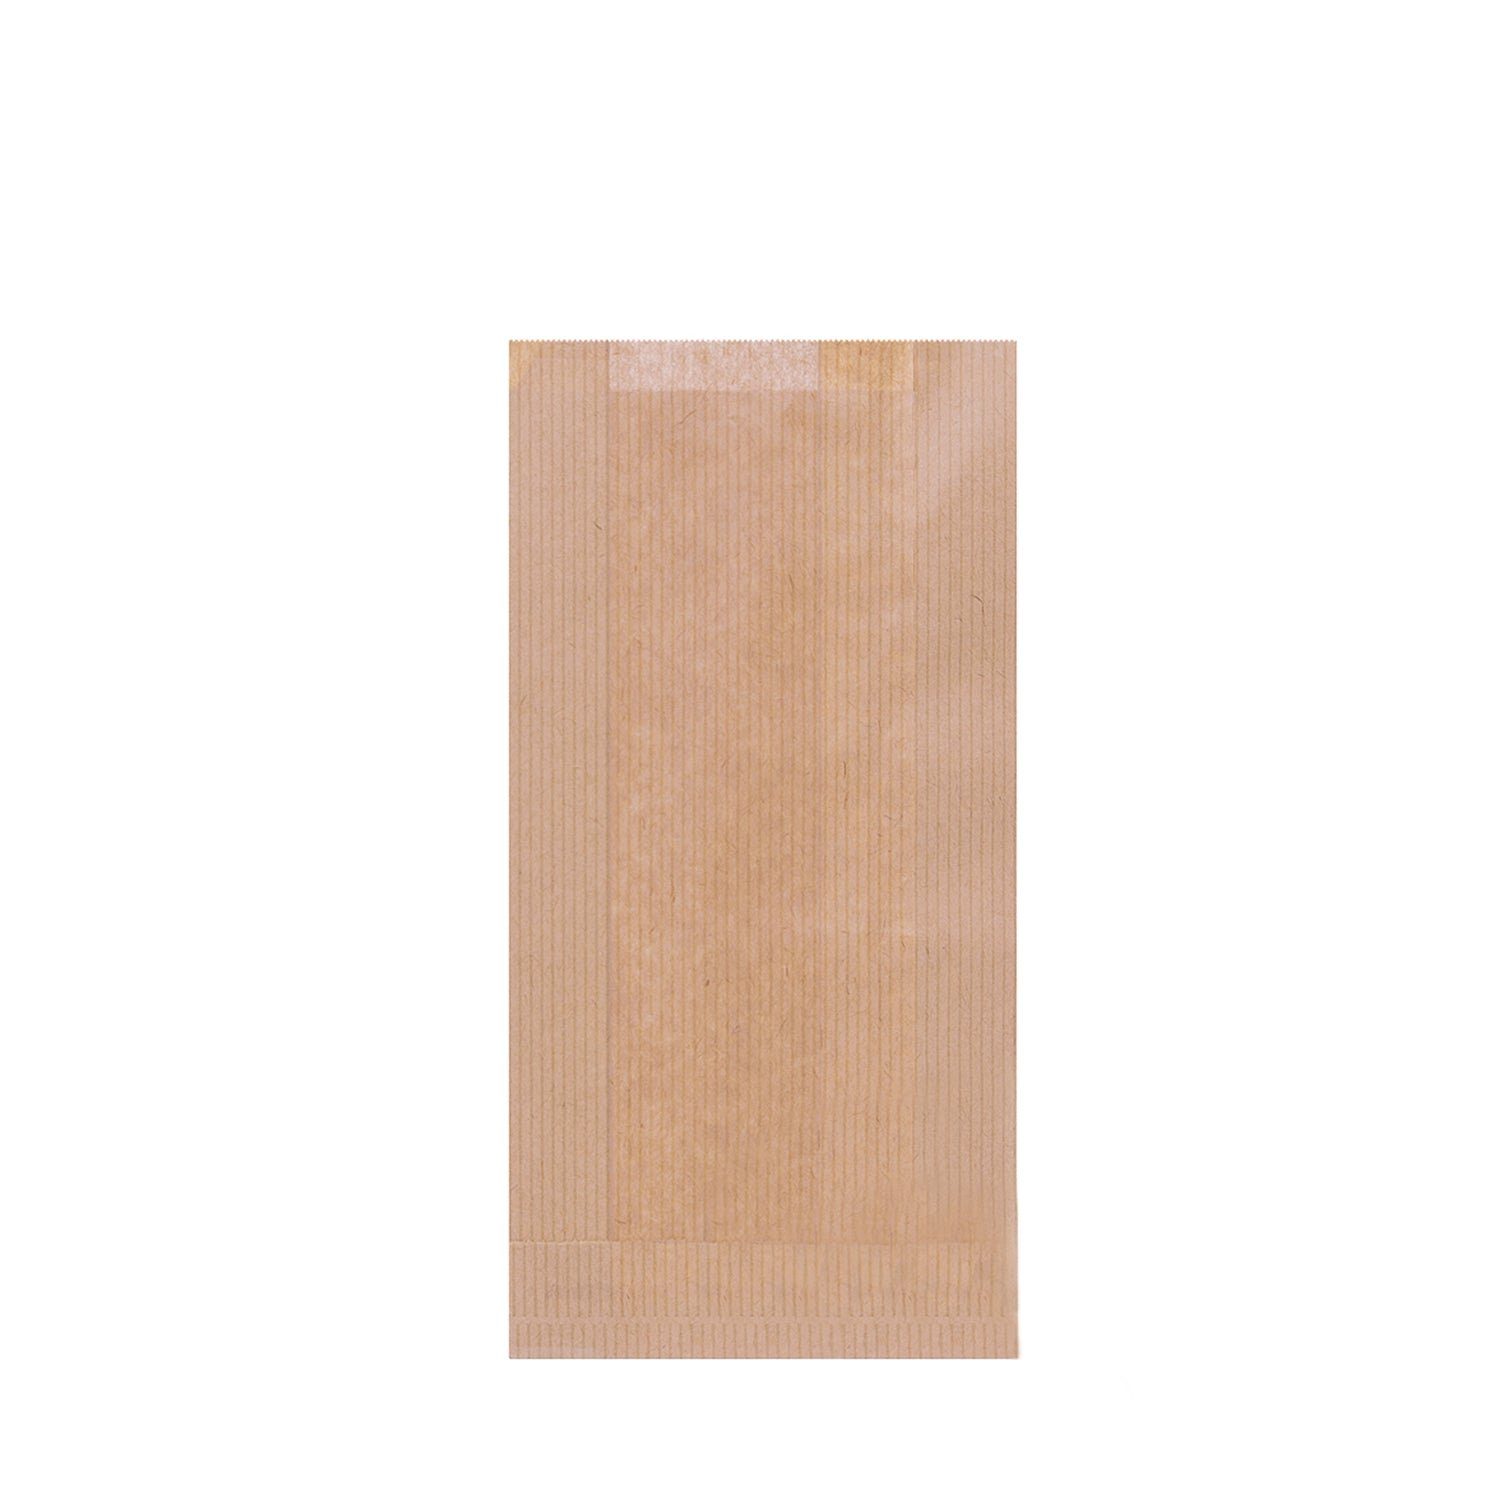 Die günstigen Neuerscheinungen von heute wisefood Einkaufsbeutel Papier Bäckertüte 5 12 braun 23 x x cm 